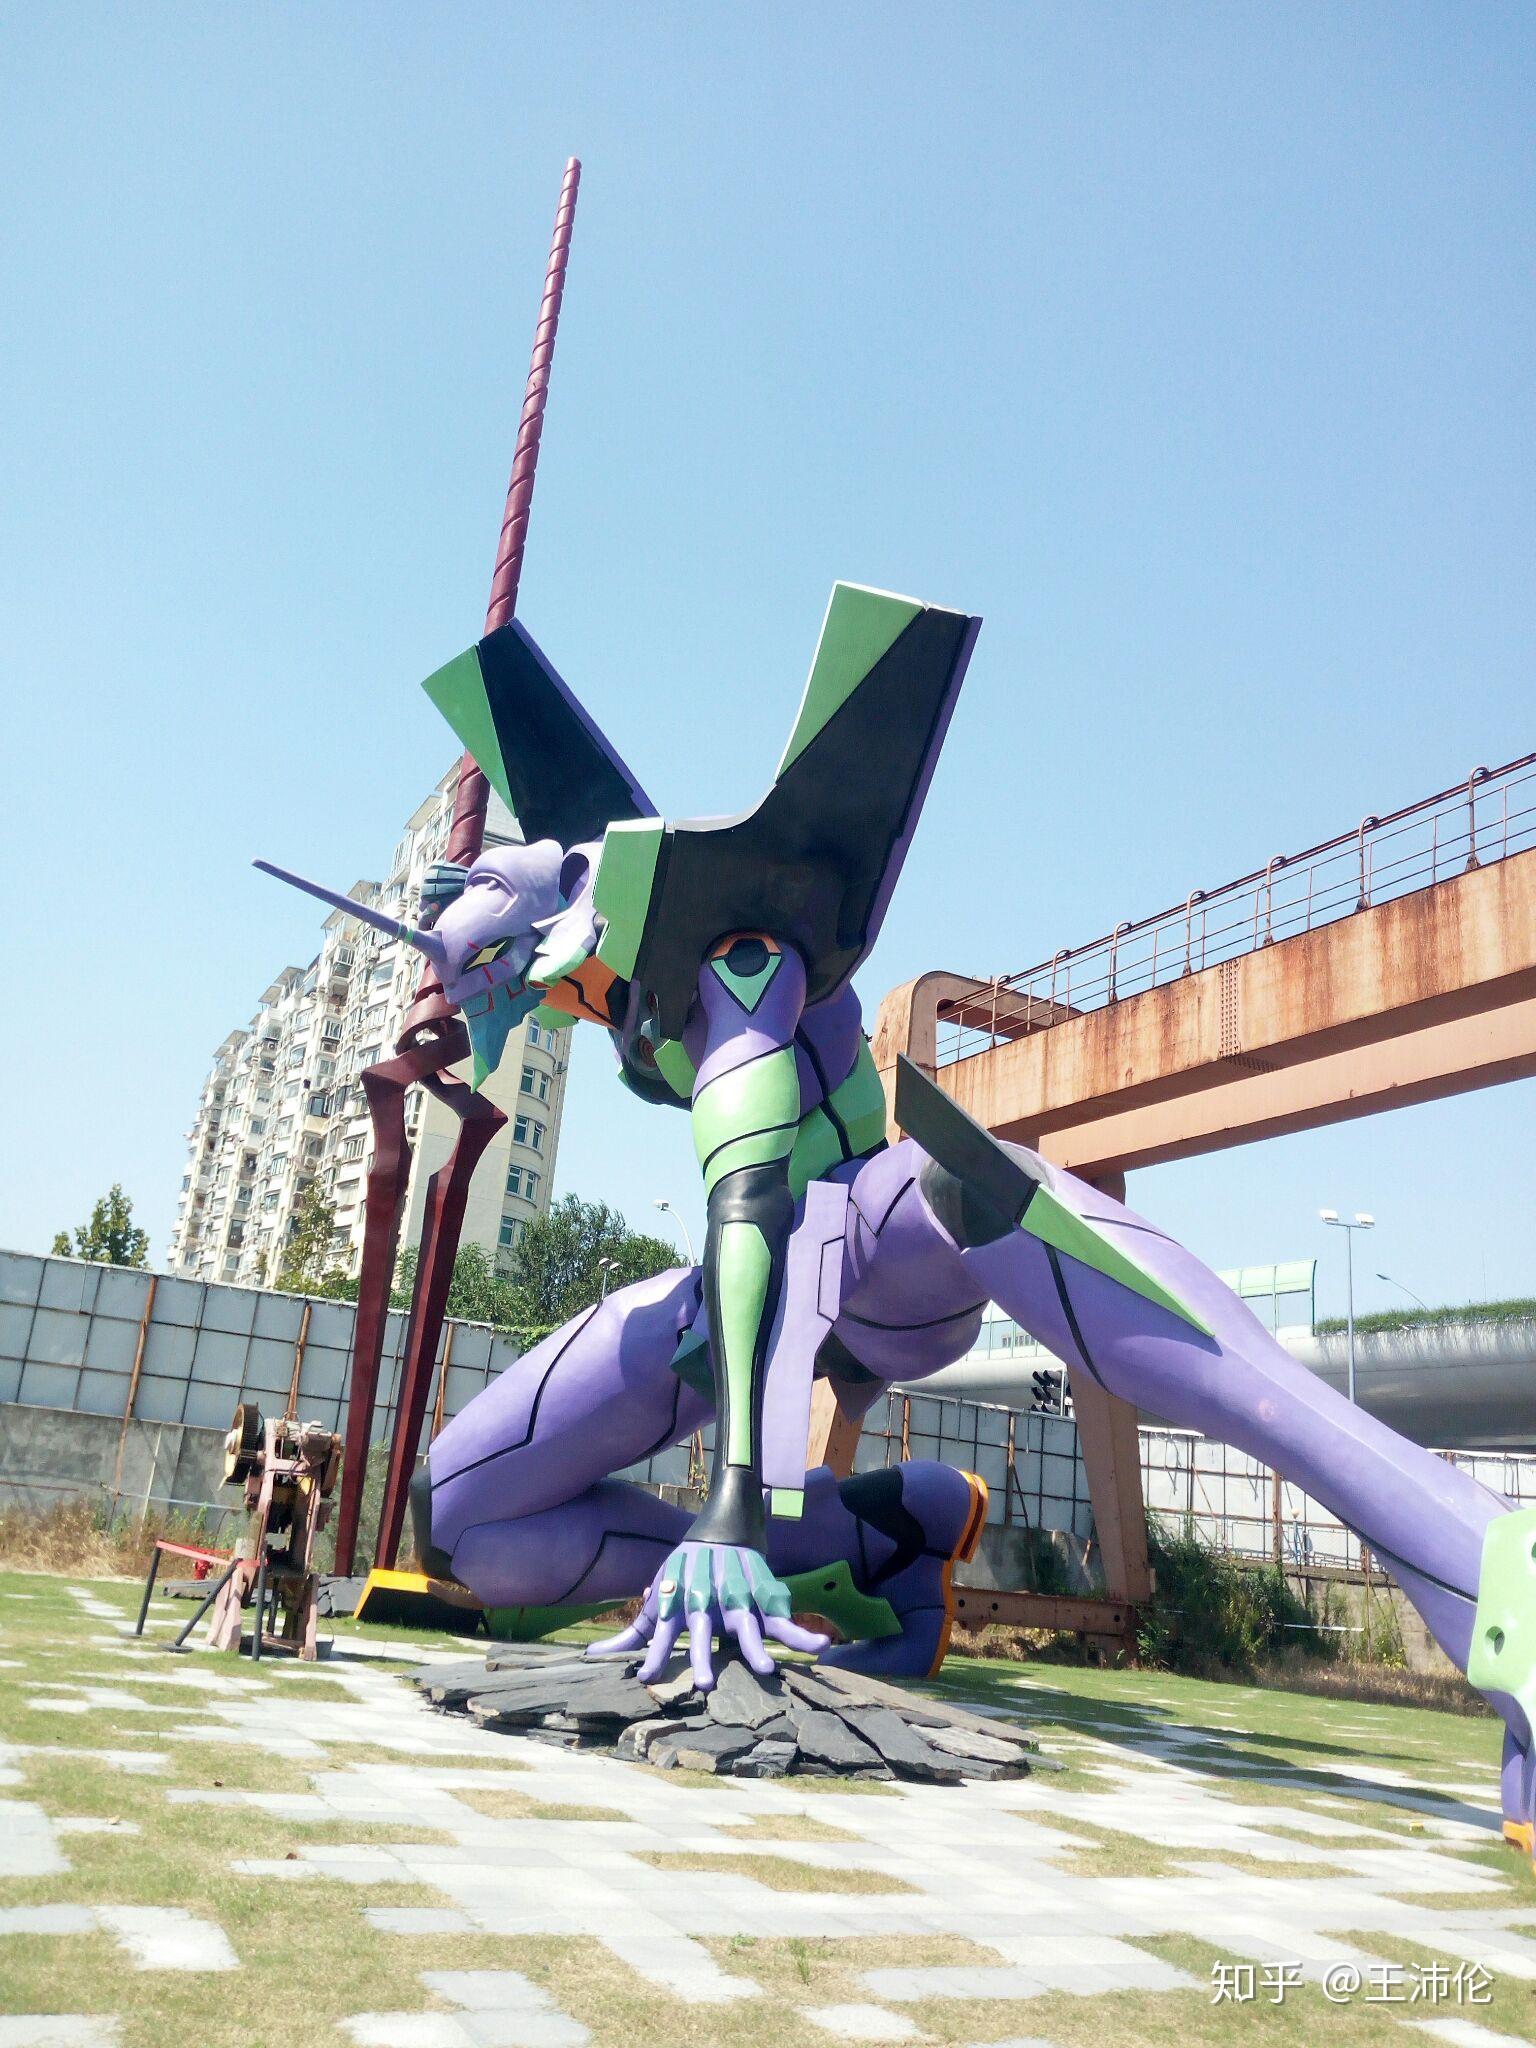 近距离观看上海新业坊25米eva初号机雕塑是一种什么样的体验?